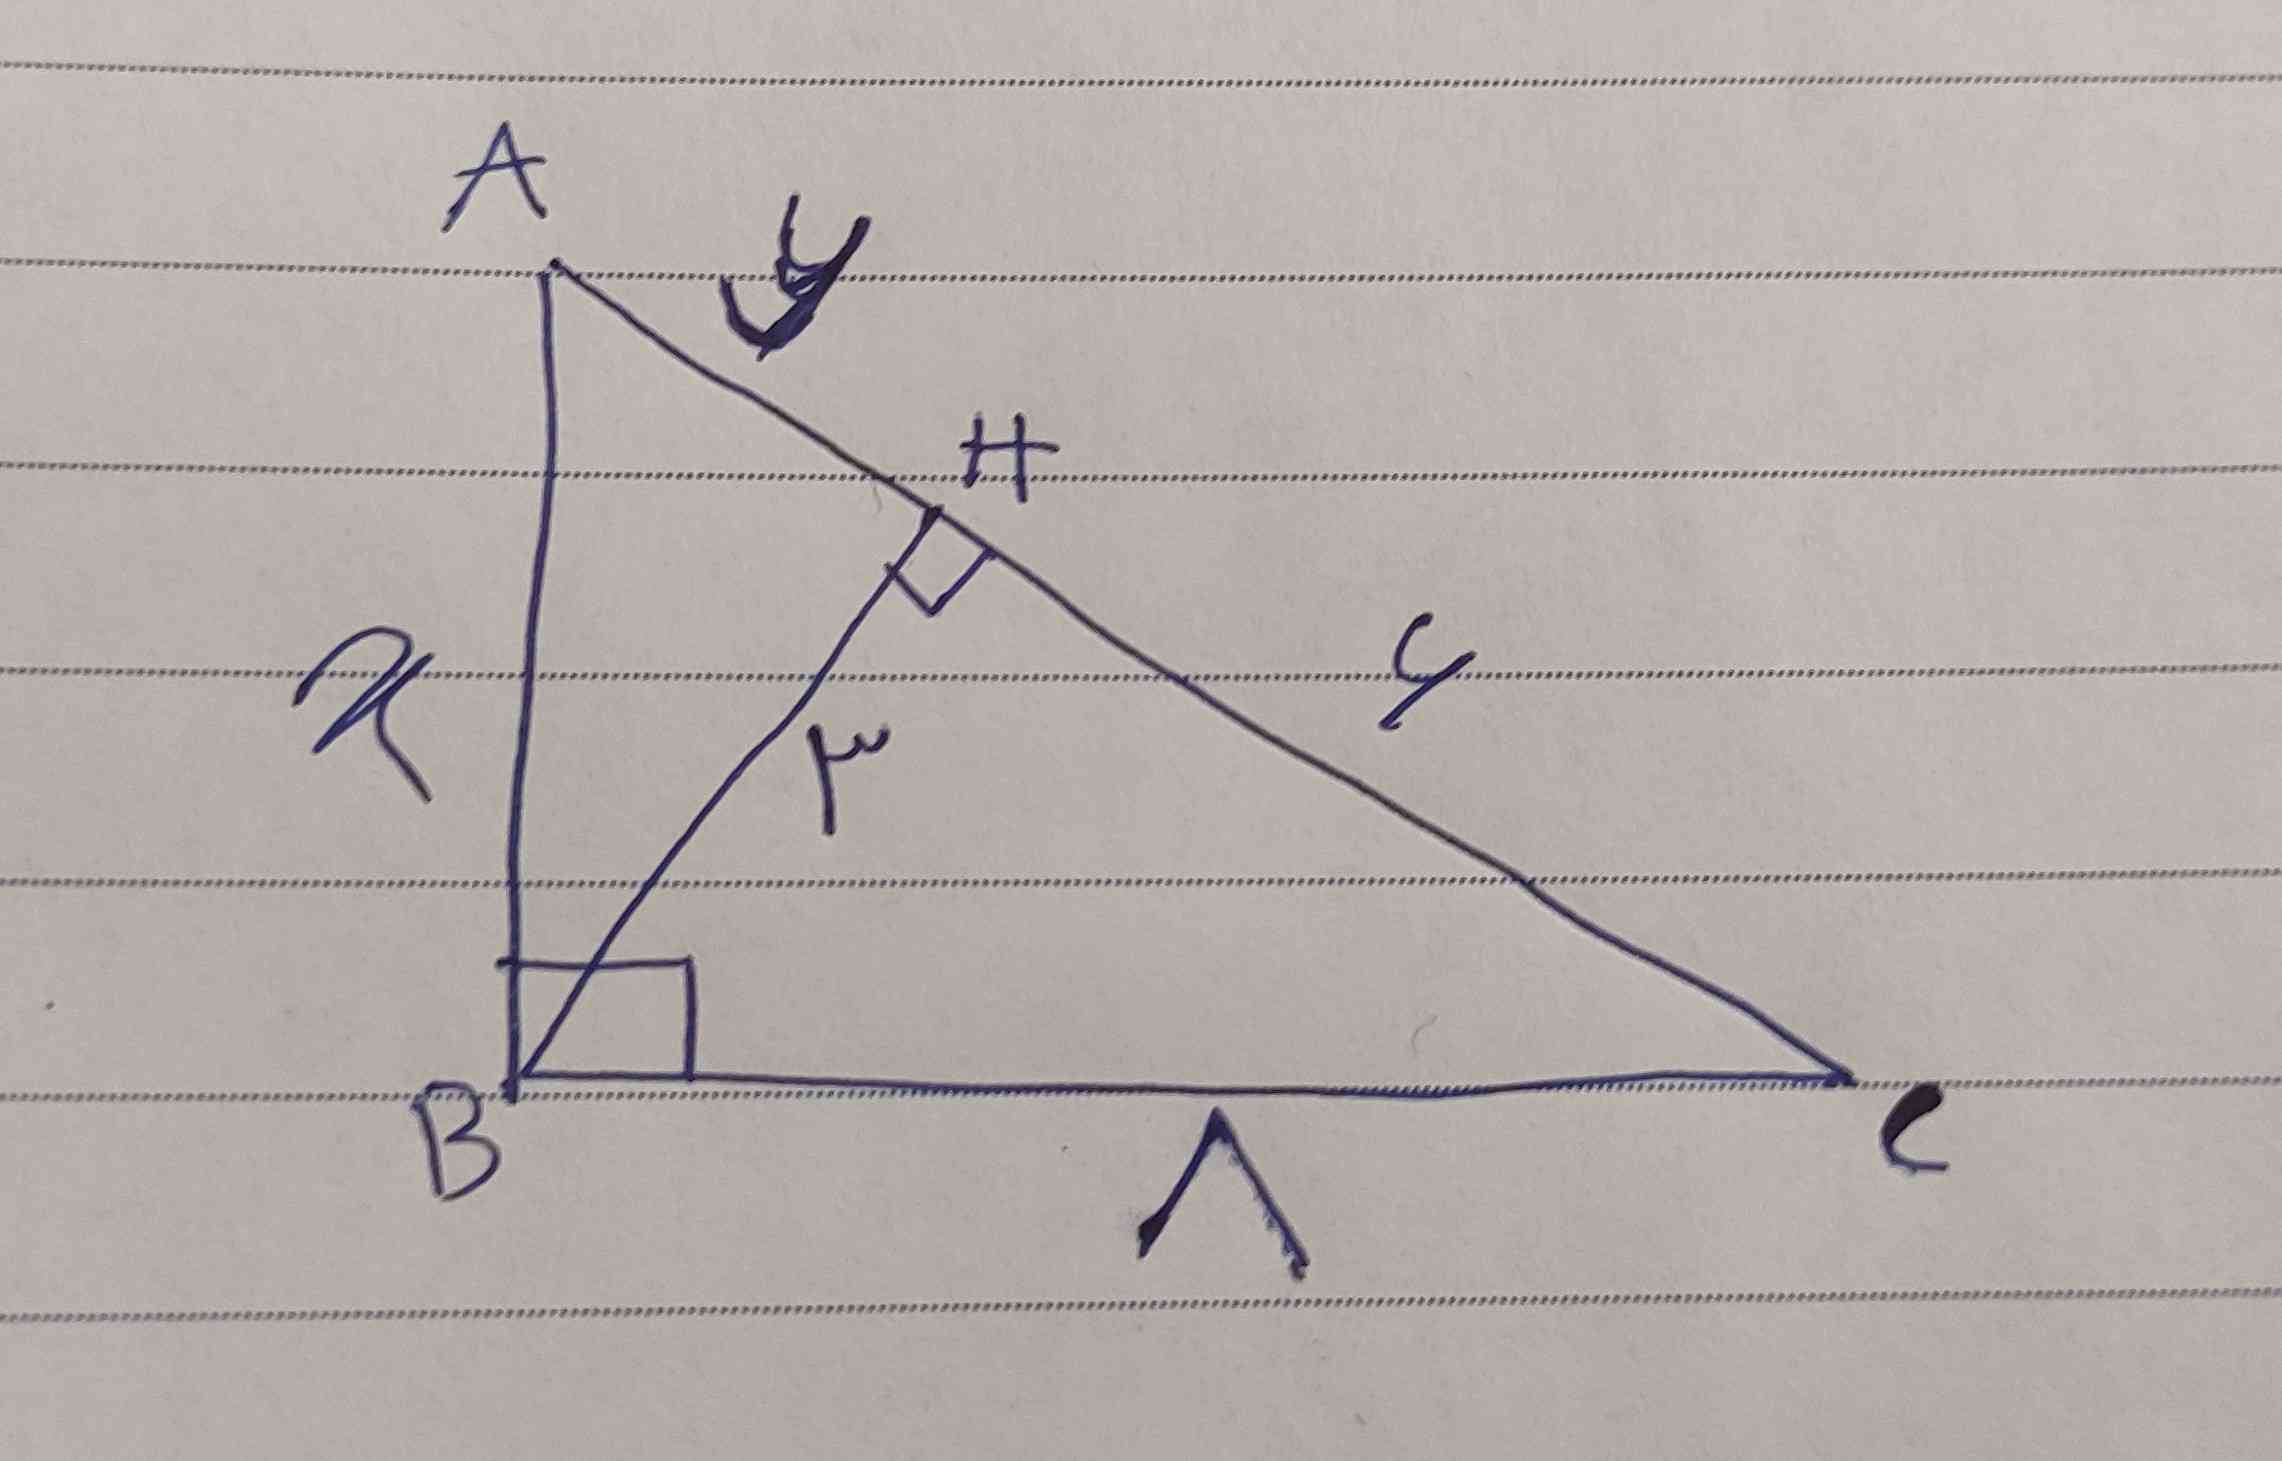 کسی میدونه چه جوری تشابه مثلثABCرو با BHC پیدا کنم 

معرکه میدم